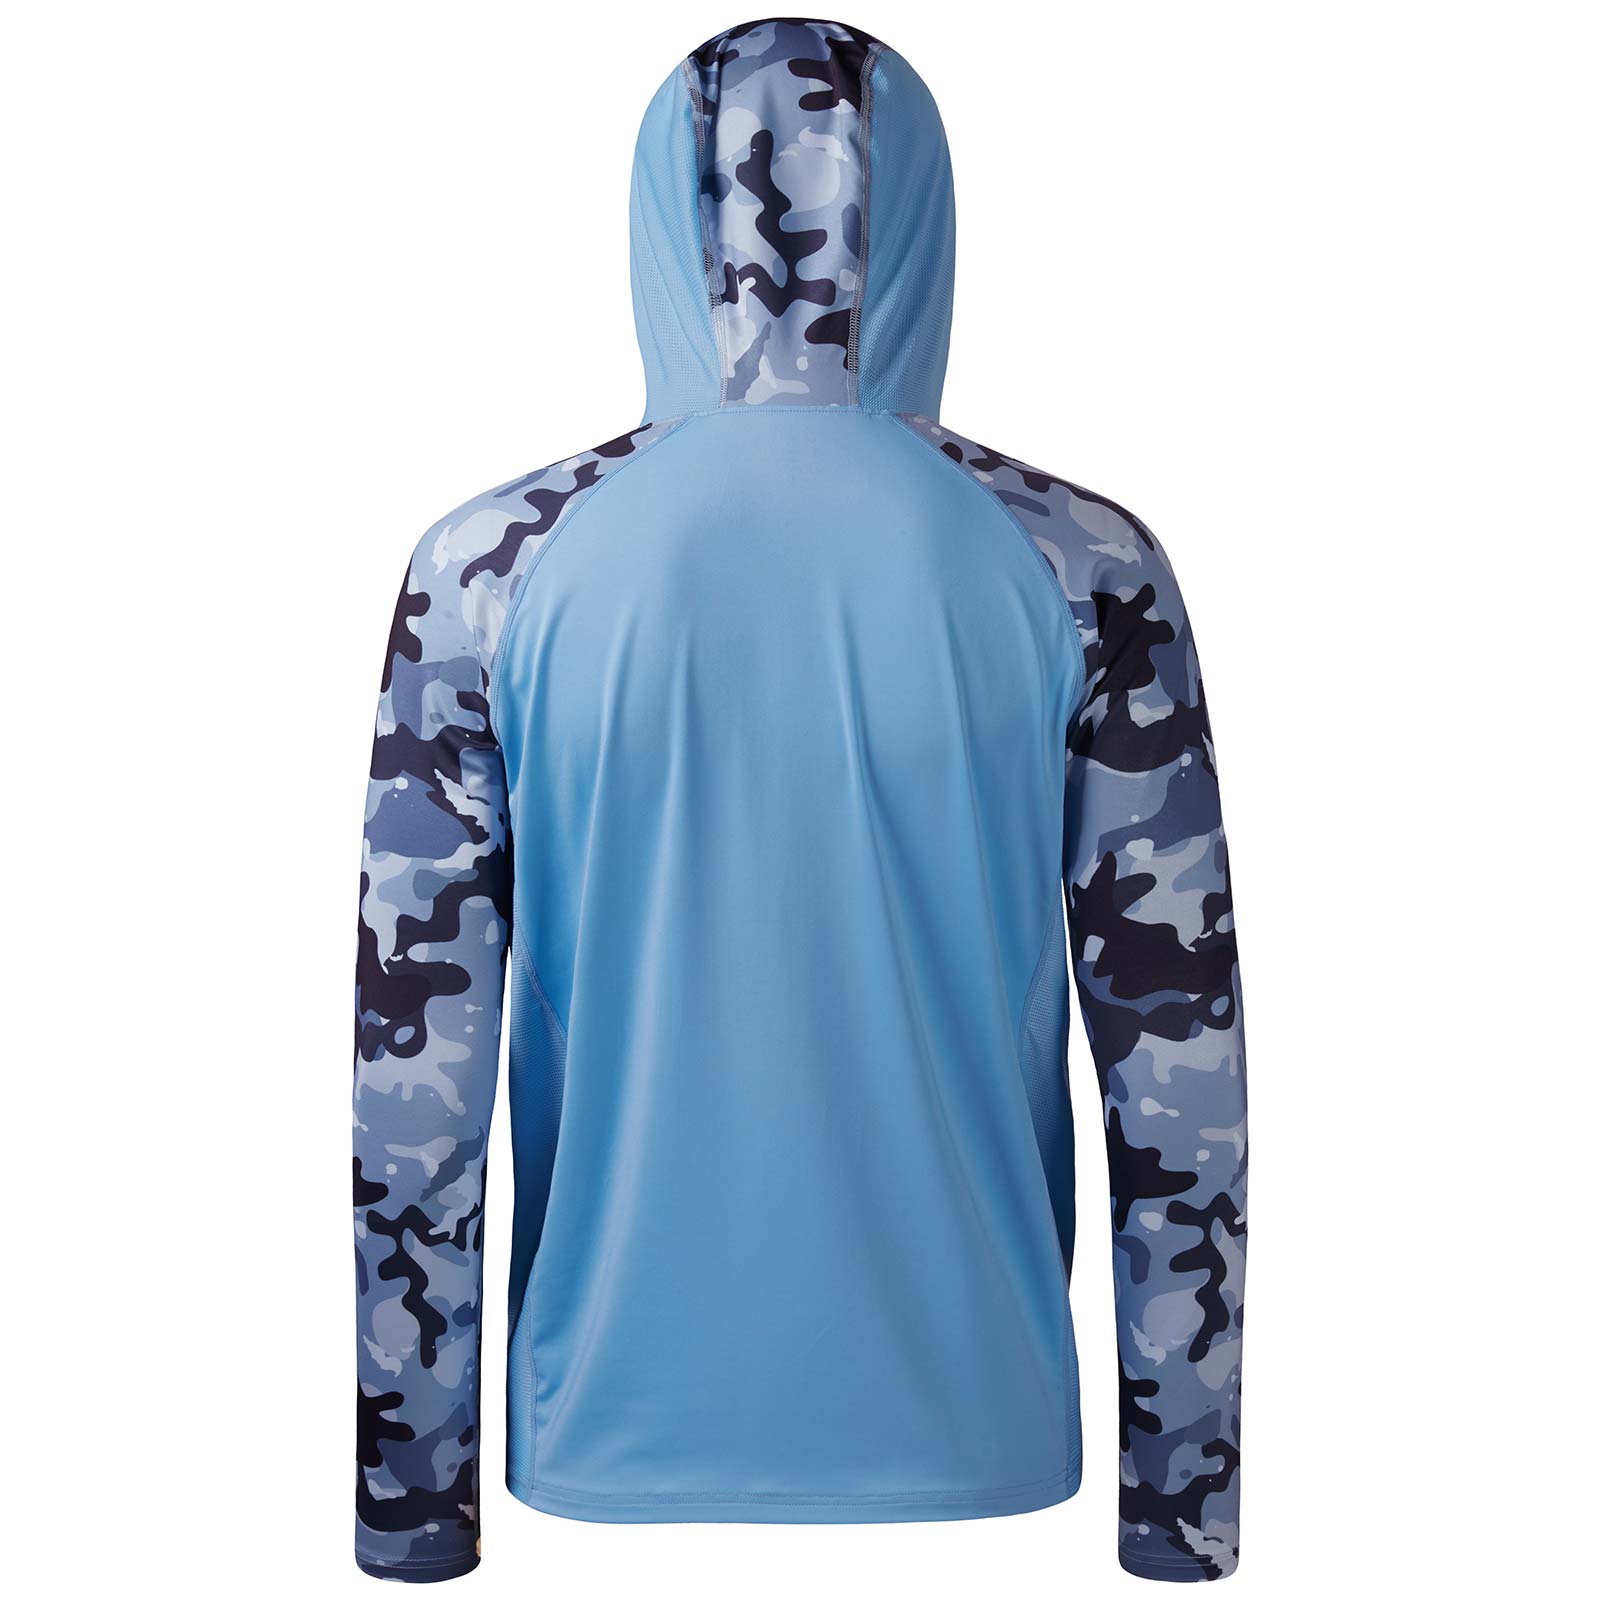 Bassdash Men's Quick Dry Camo Fishing hoodie Long Sleeve Shirt